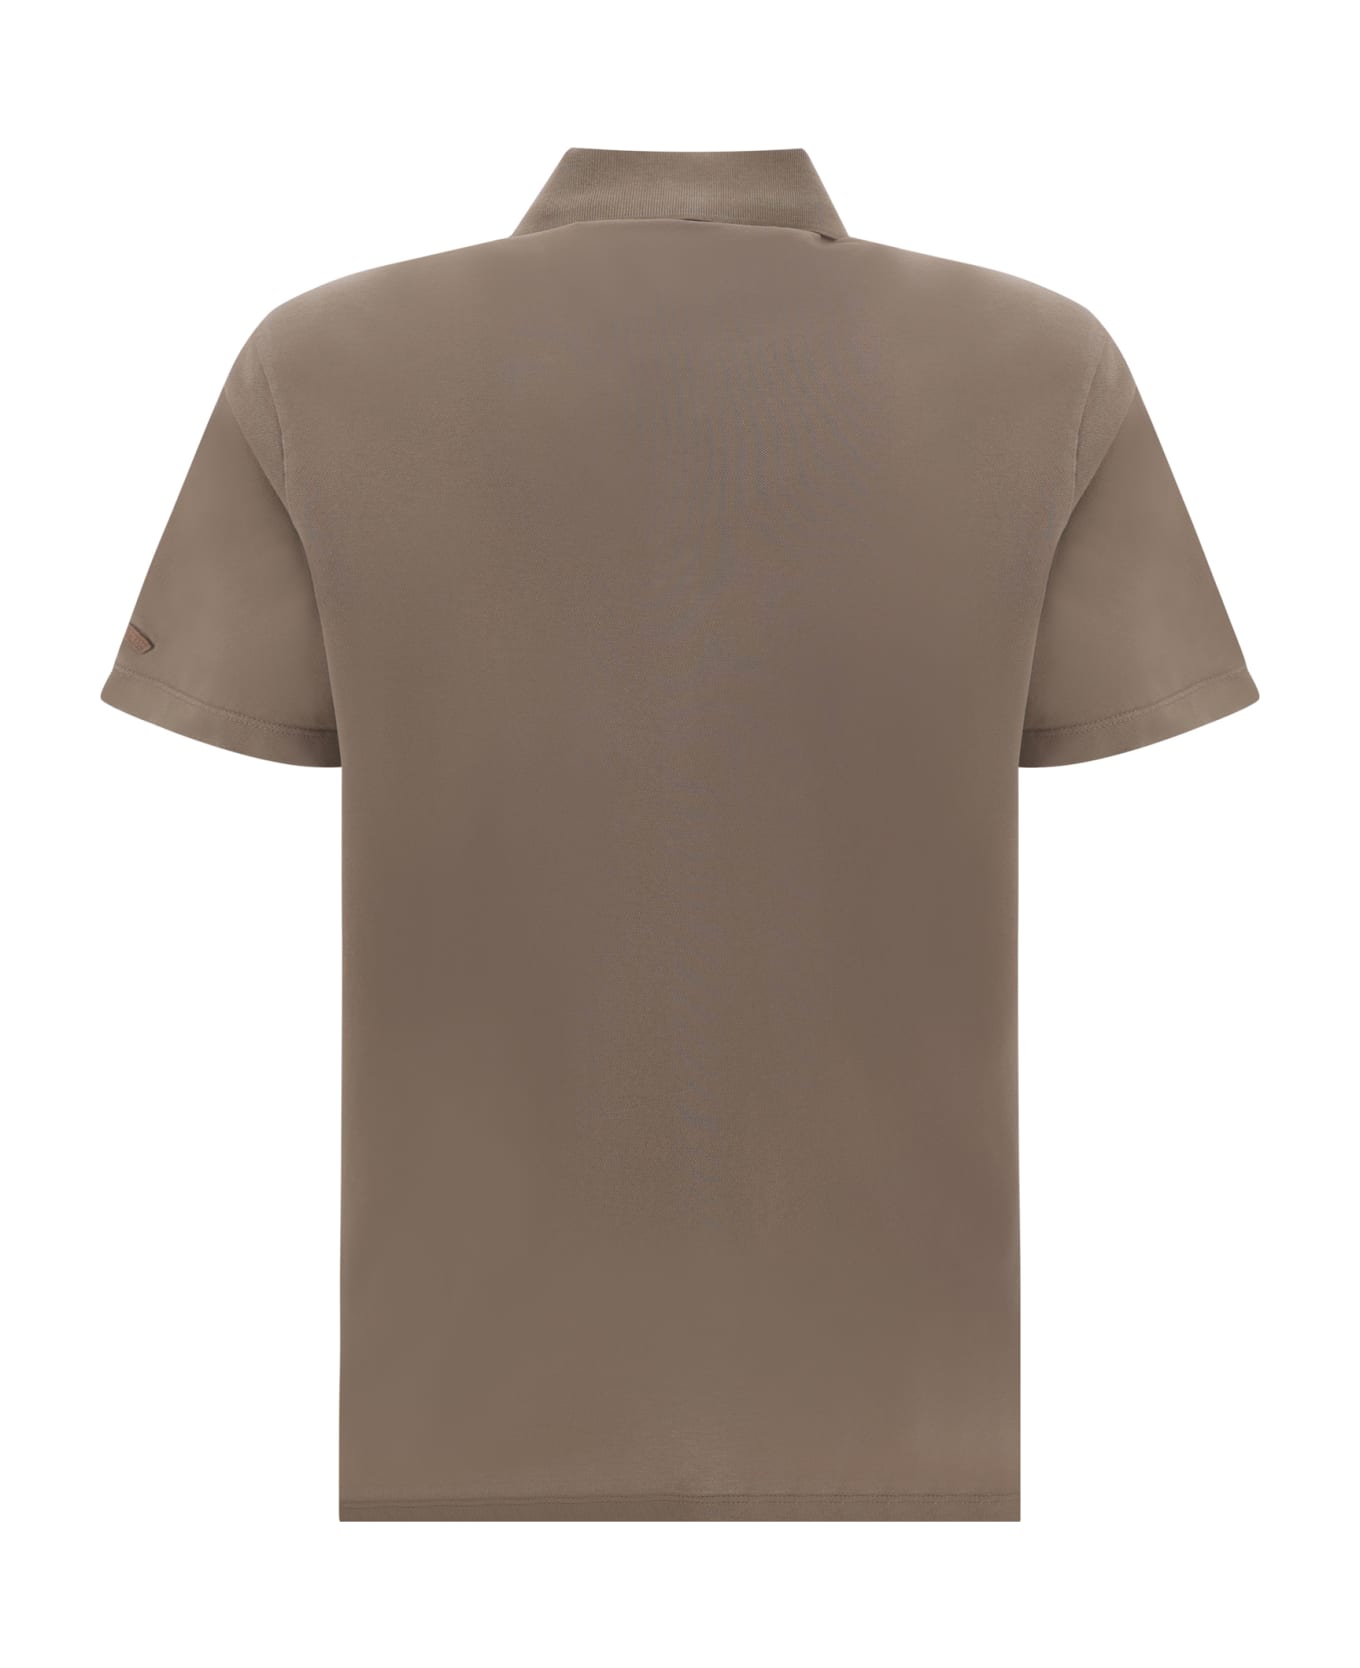 Paul&Shark Polo Shirt - Acciaio ポロシャツ